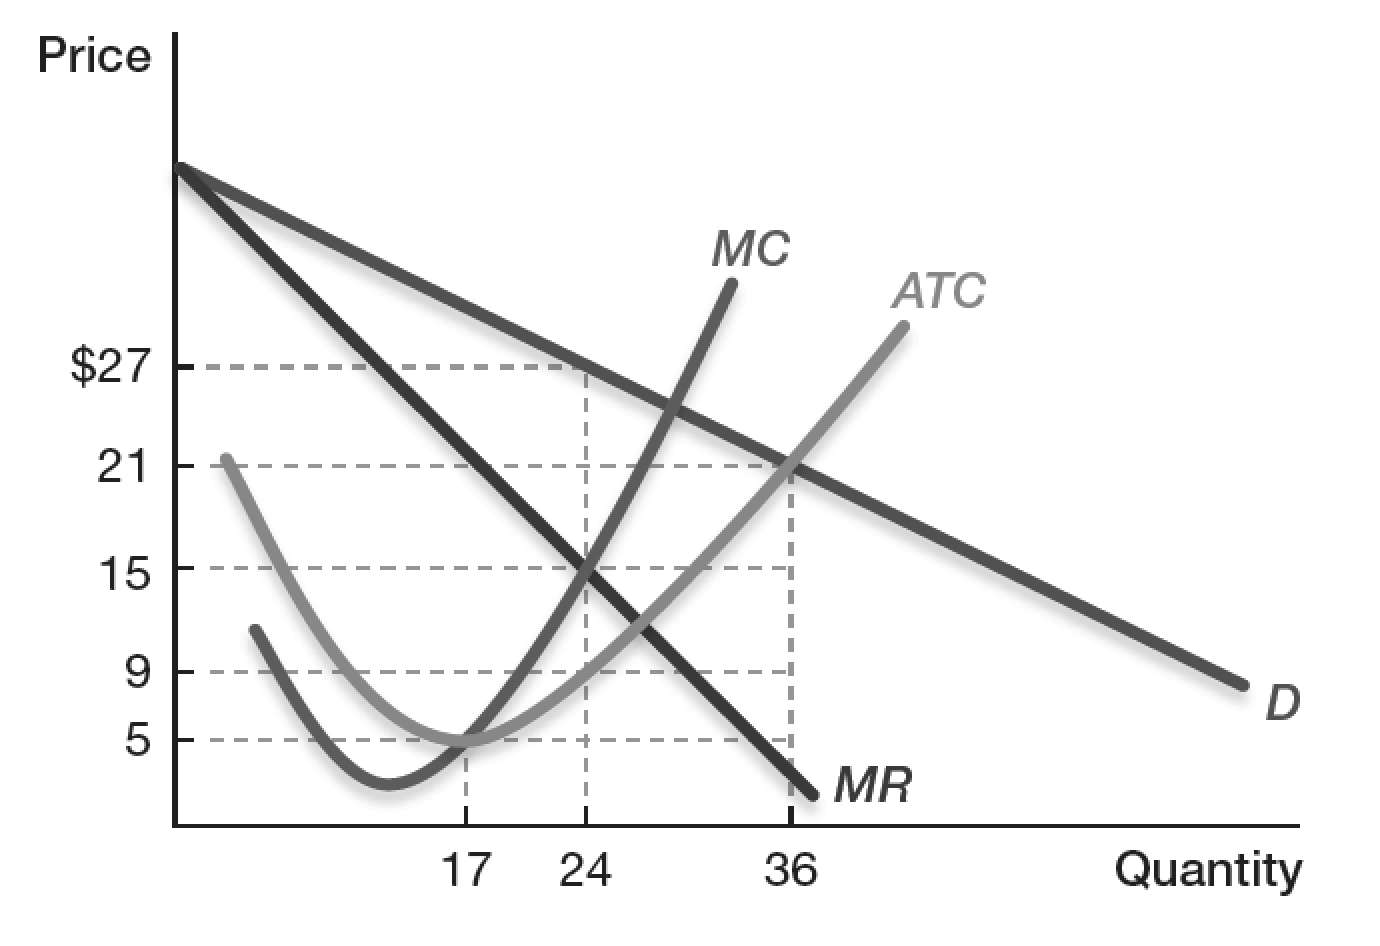 The diagram below shows the short run demand curve (D),